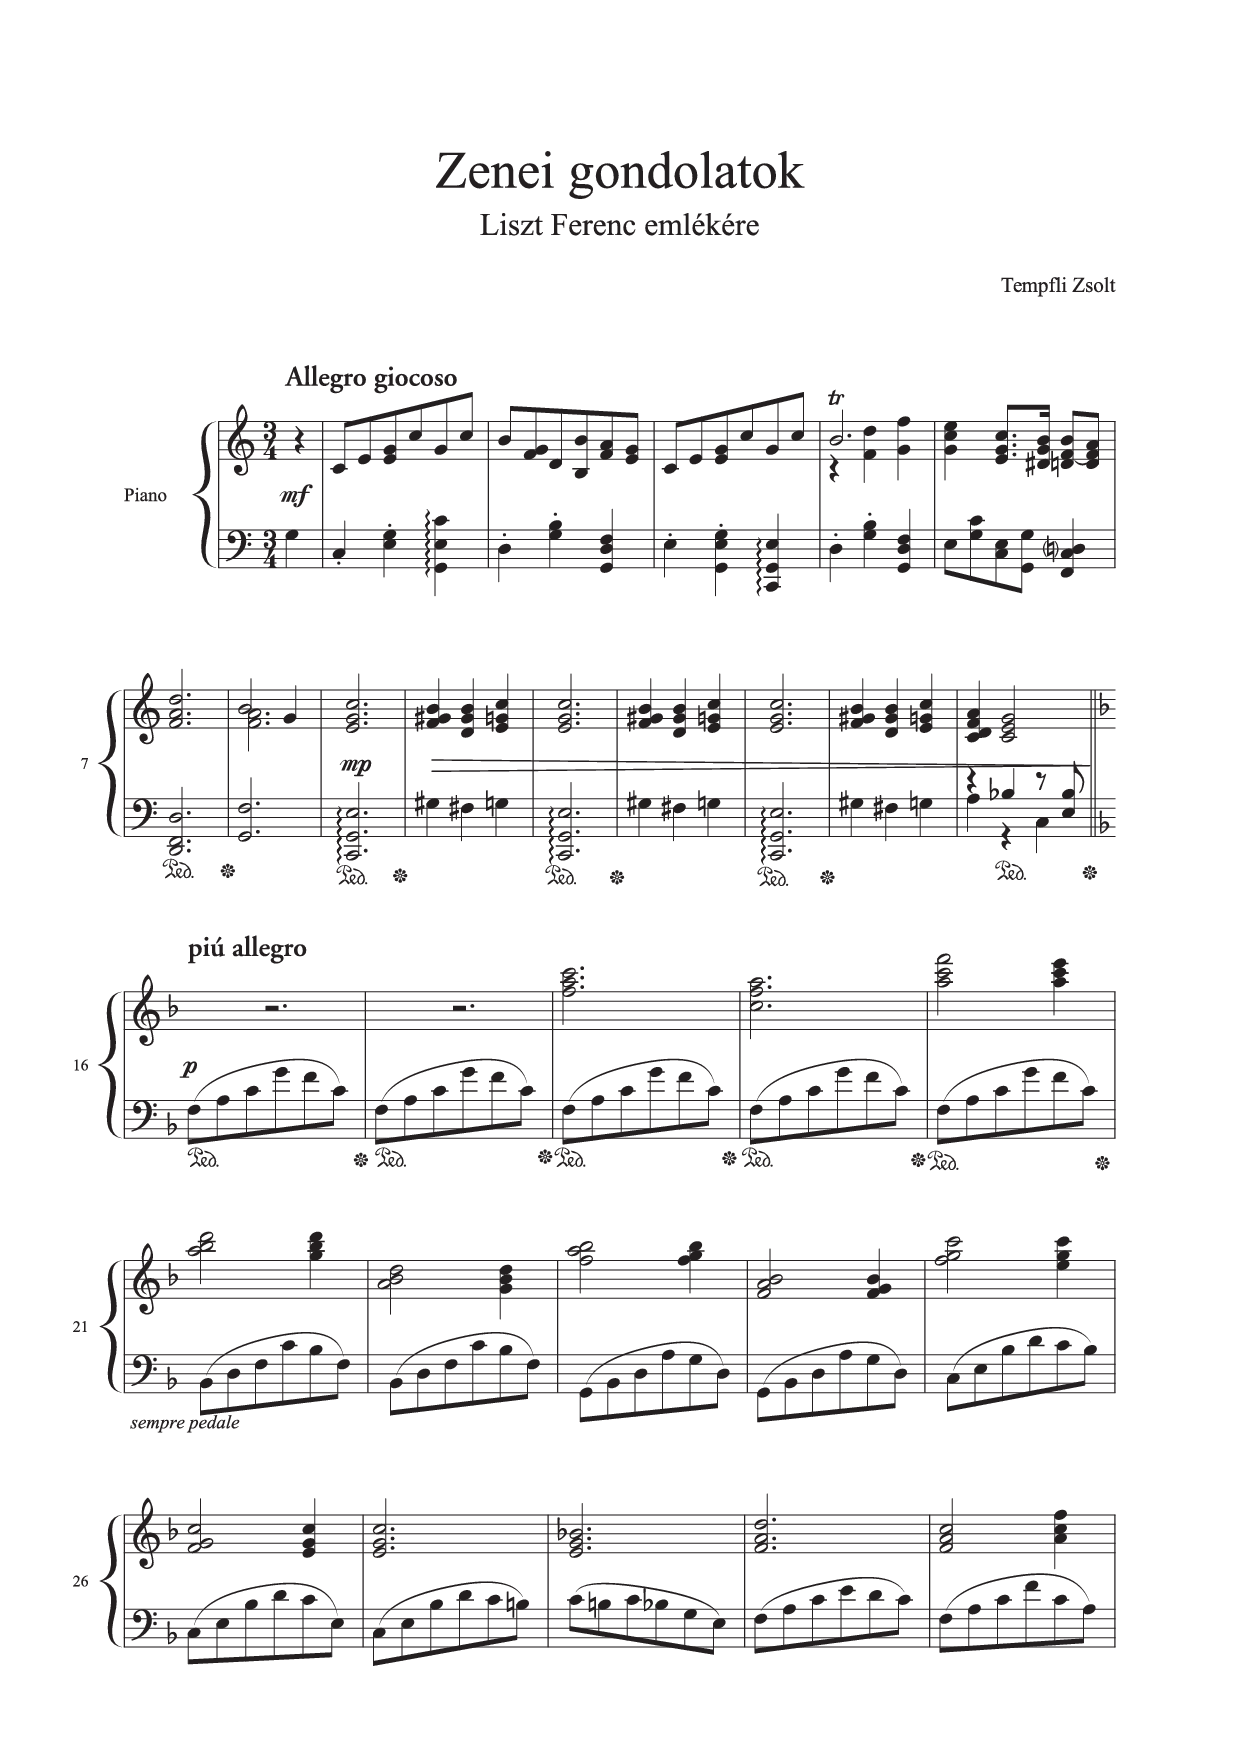 Tempfli Zsolt: Zenei gondolatok Liszt Ferenc emlékére (op. 10) zongorára